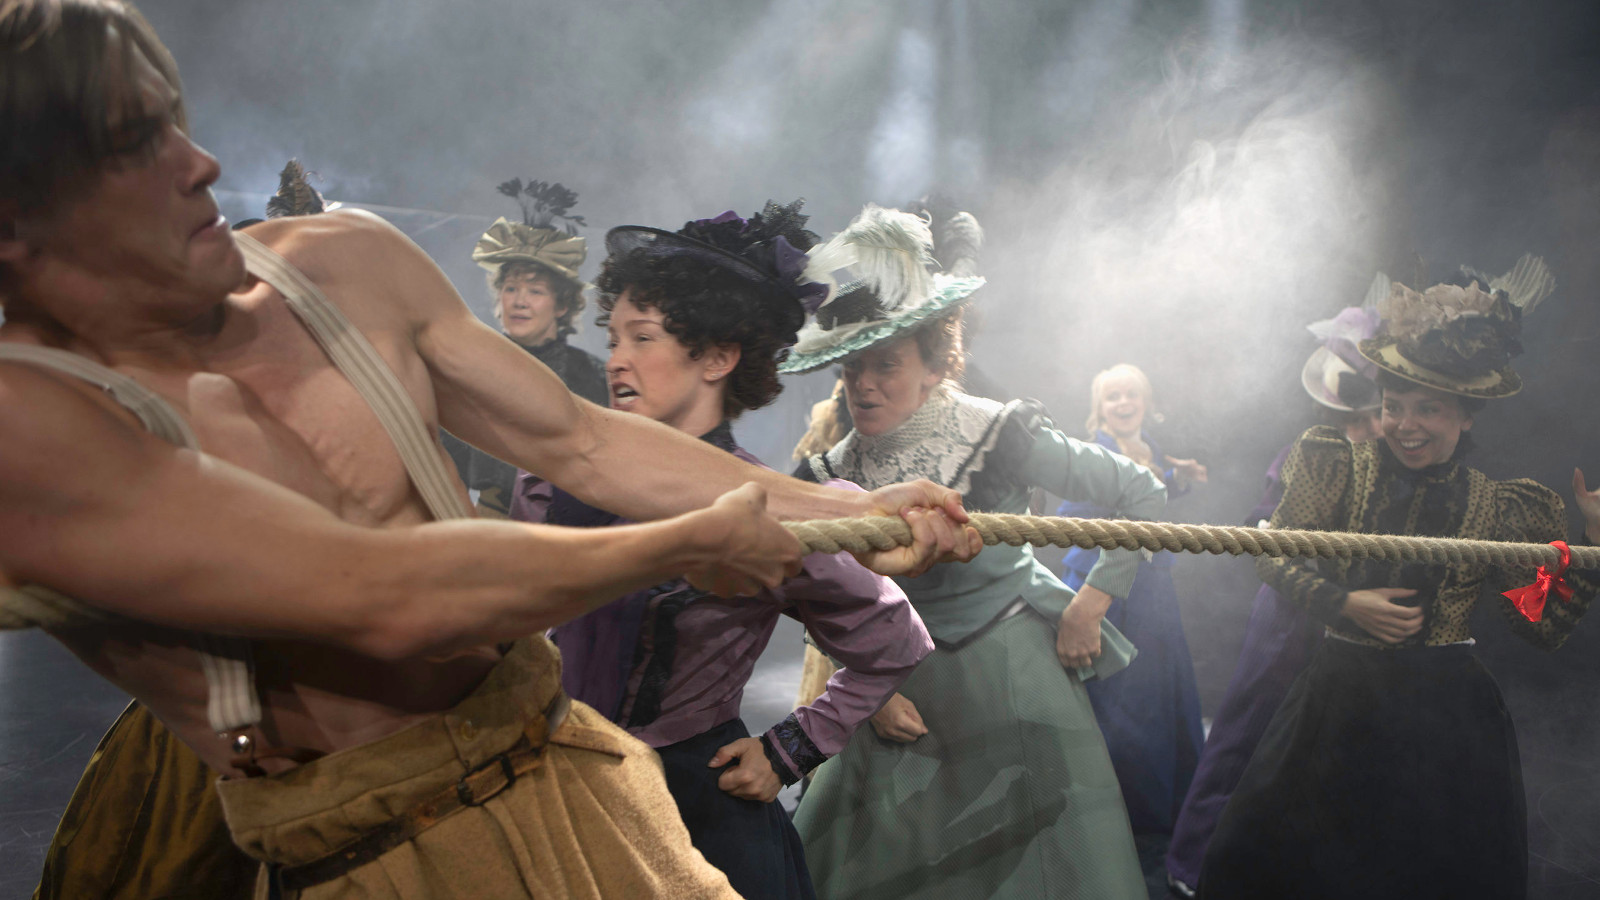 Kuvassa on näyttelijöitä vetämässä köyttä ja heillä on 1800-luvun vaatteet päällä.